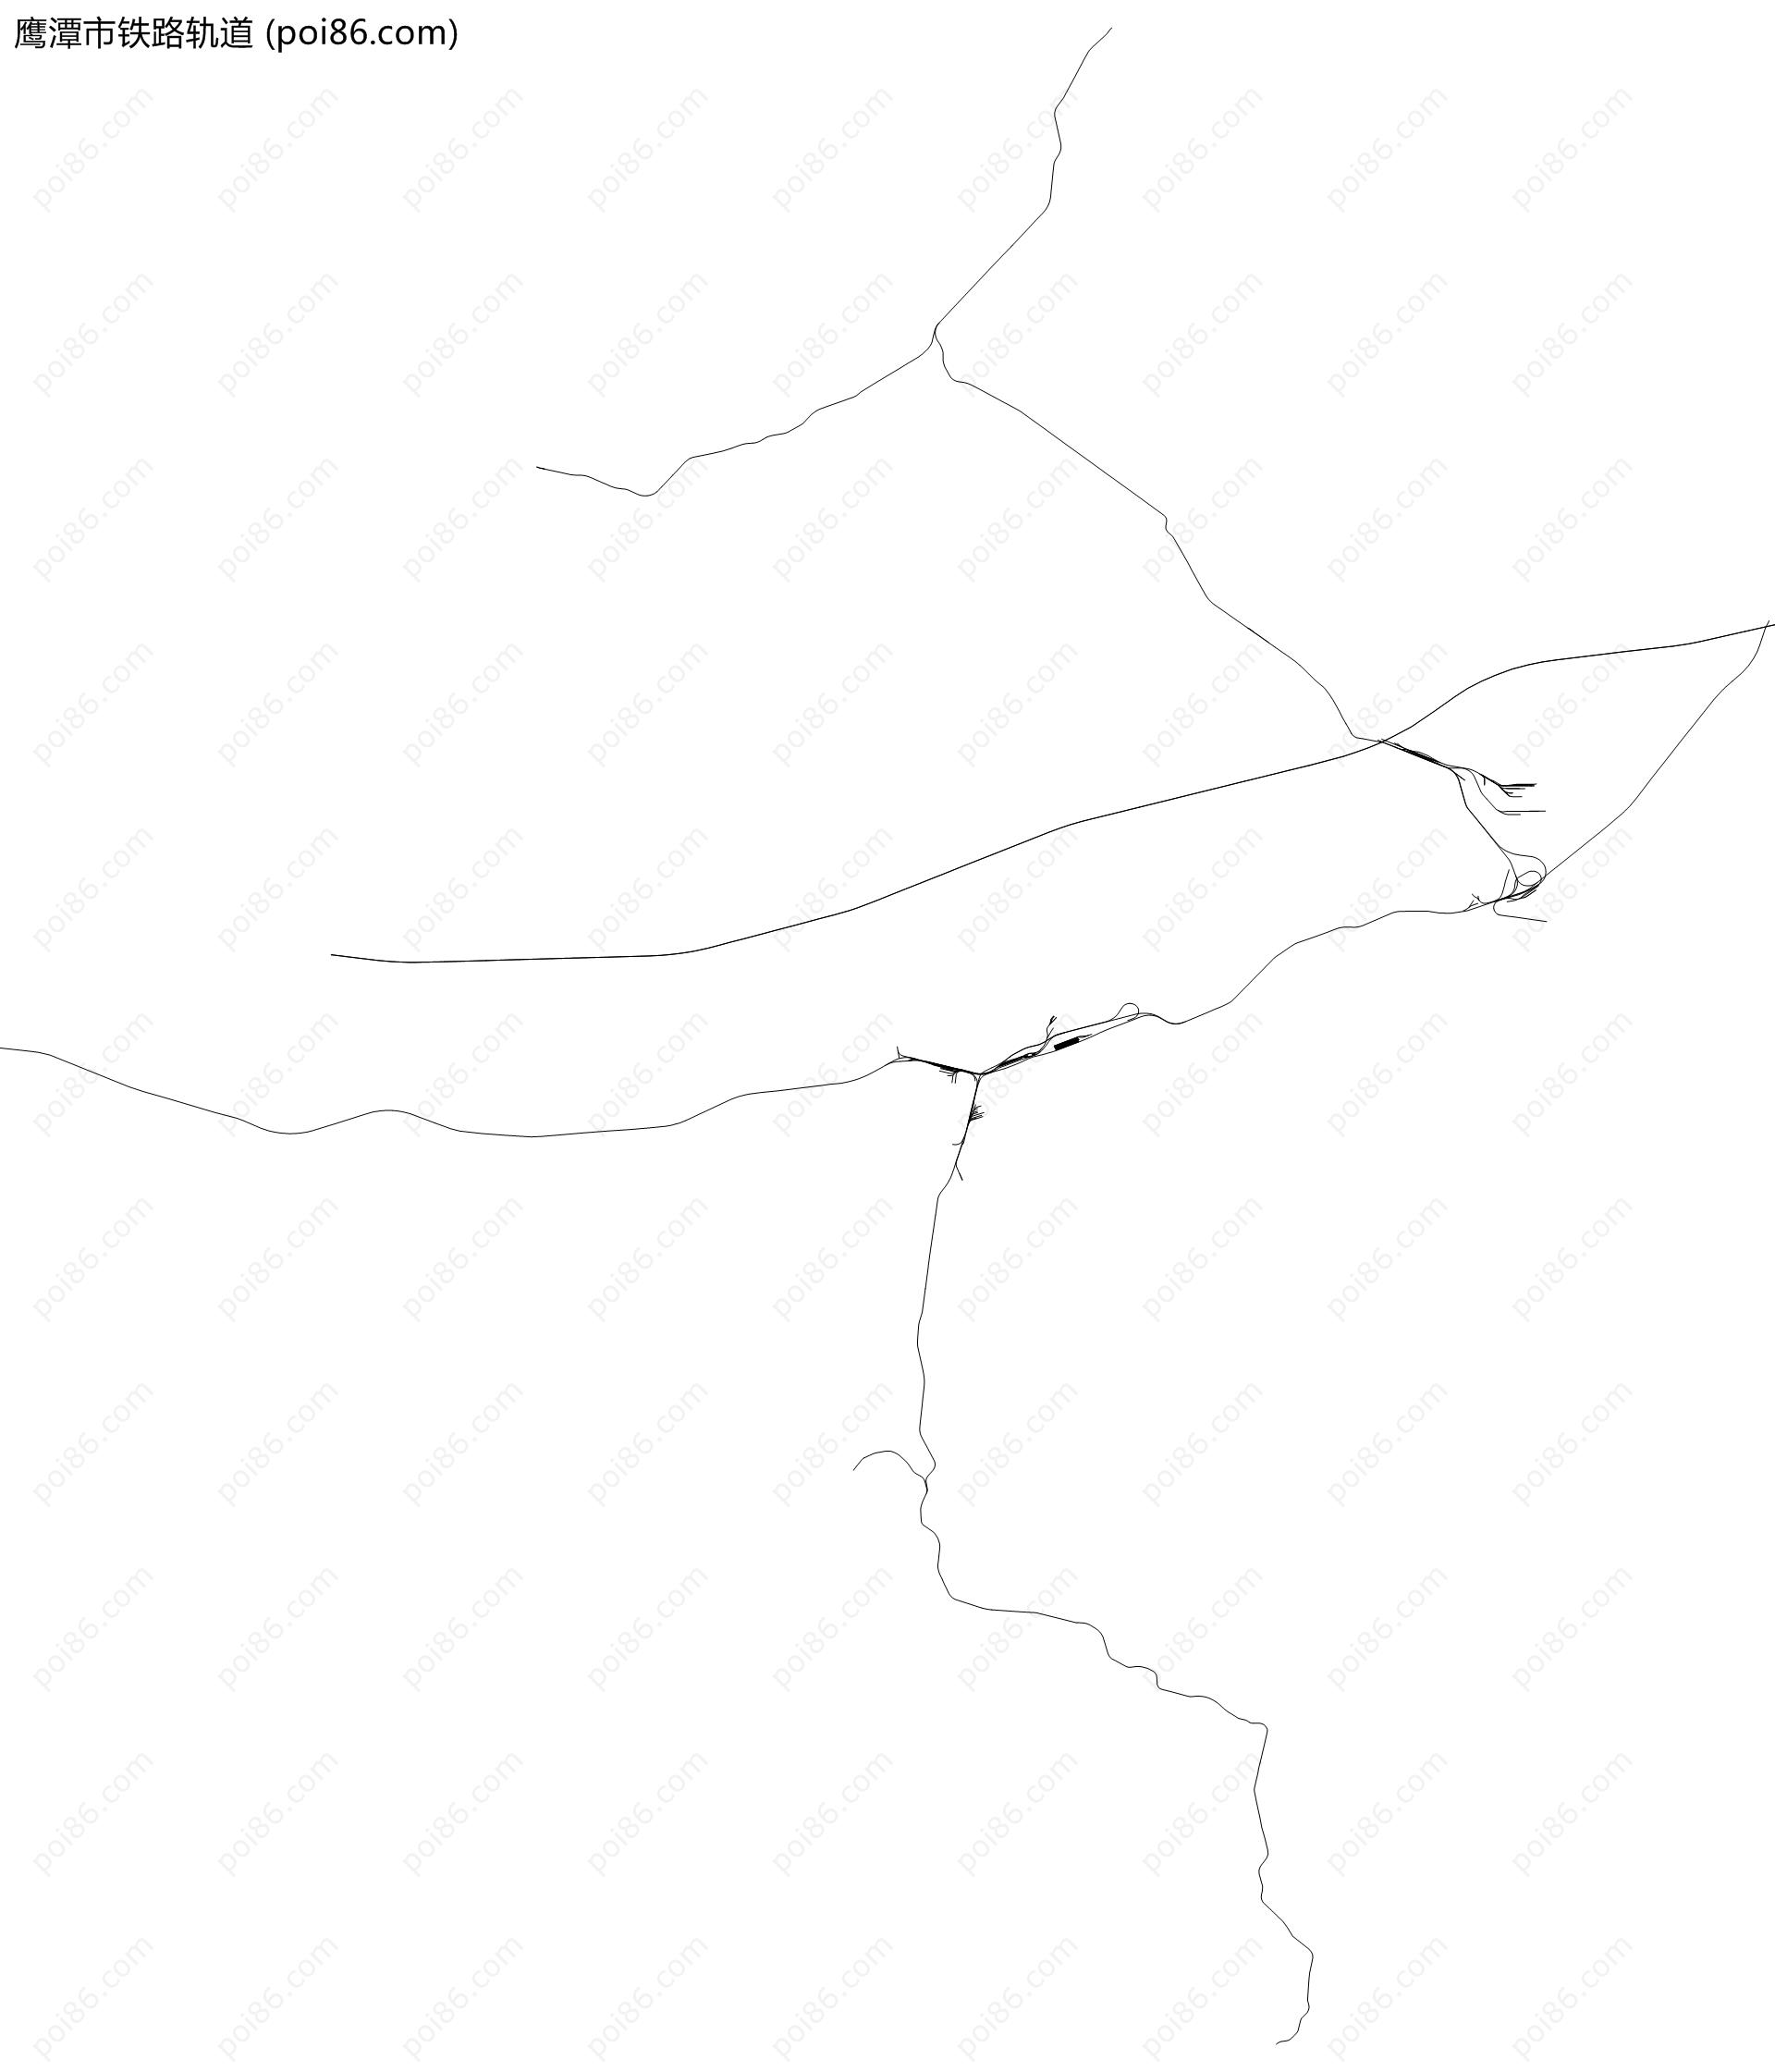 鹰潭市铁路轨道地图